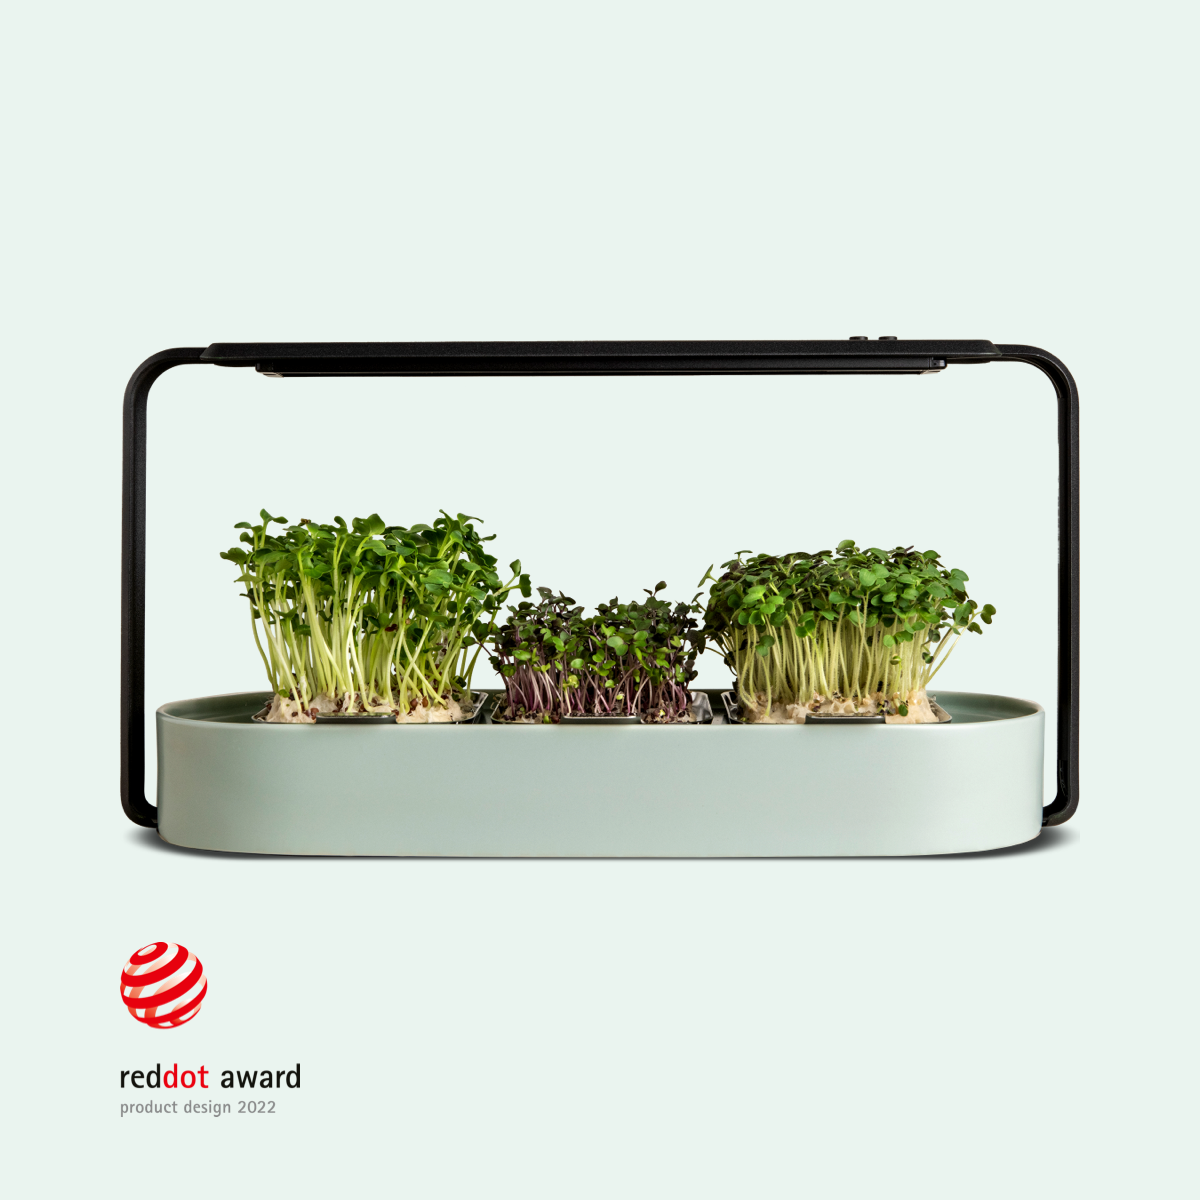 ingarden (subscribe & save plan) Microgreens Growing Kit ingarden warm mint  